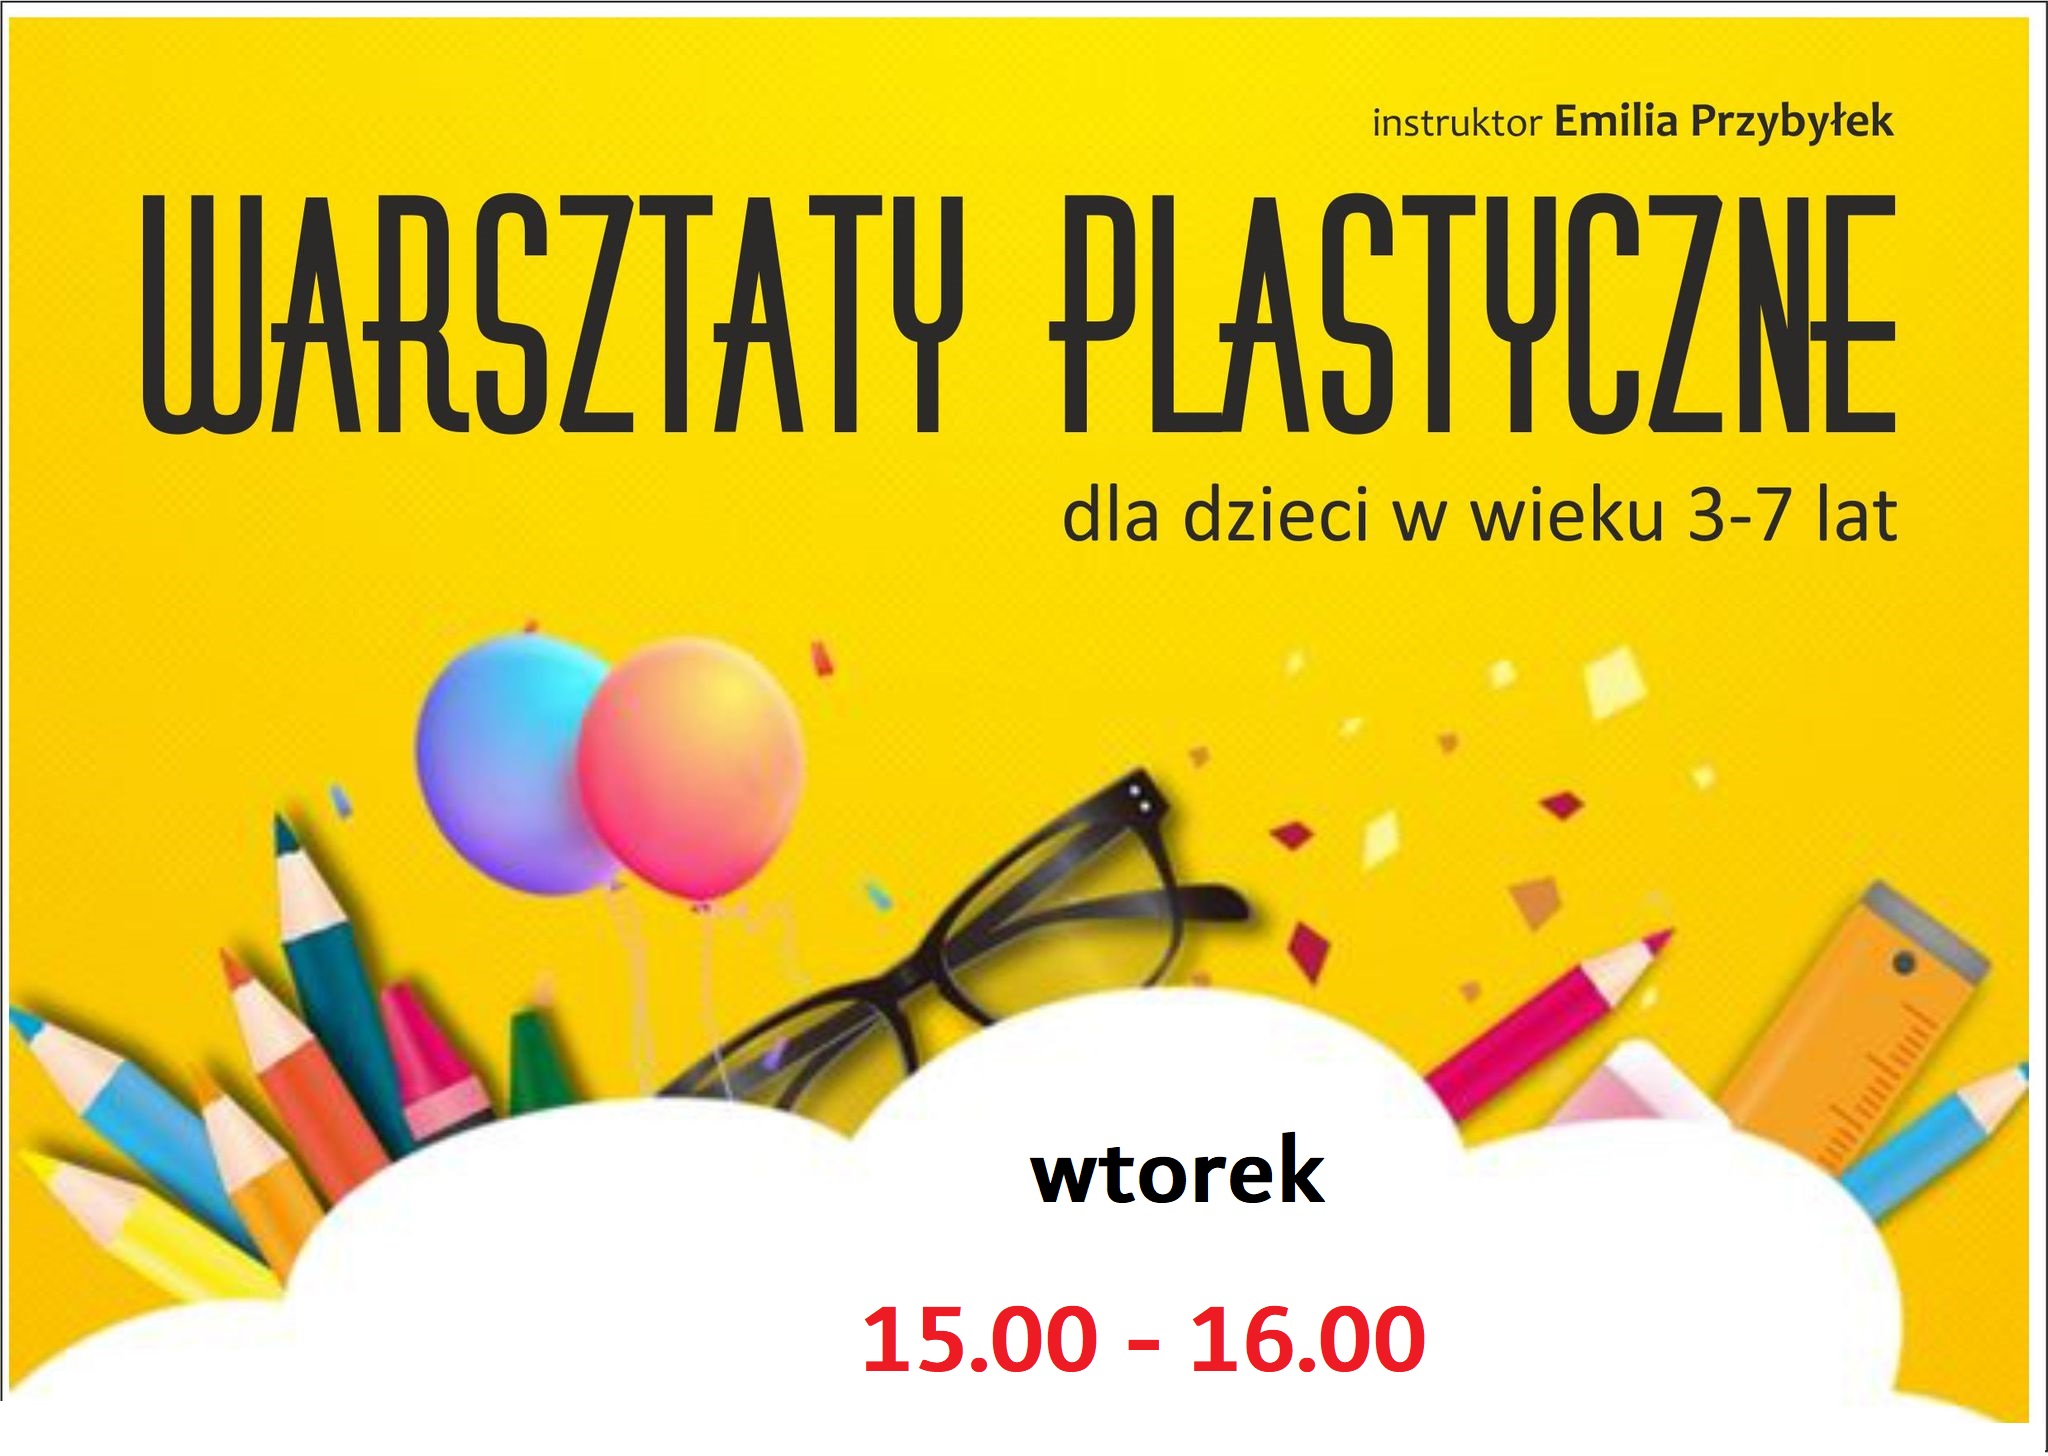 warsztaty plastyczne dla dzieci w wieku 3- 7 lat, wtorek 15:00 - 16:00, instruktor Emilia Przybyłek 